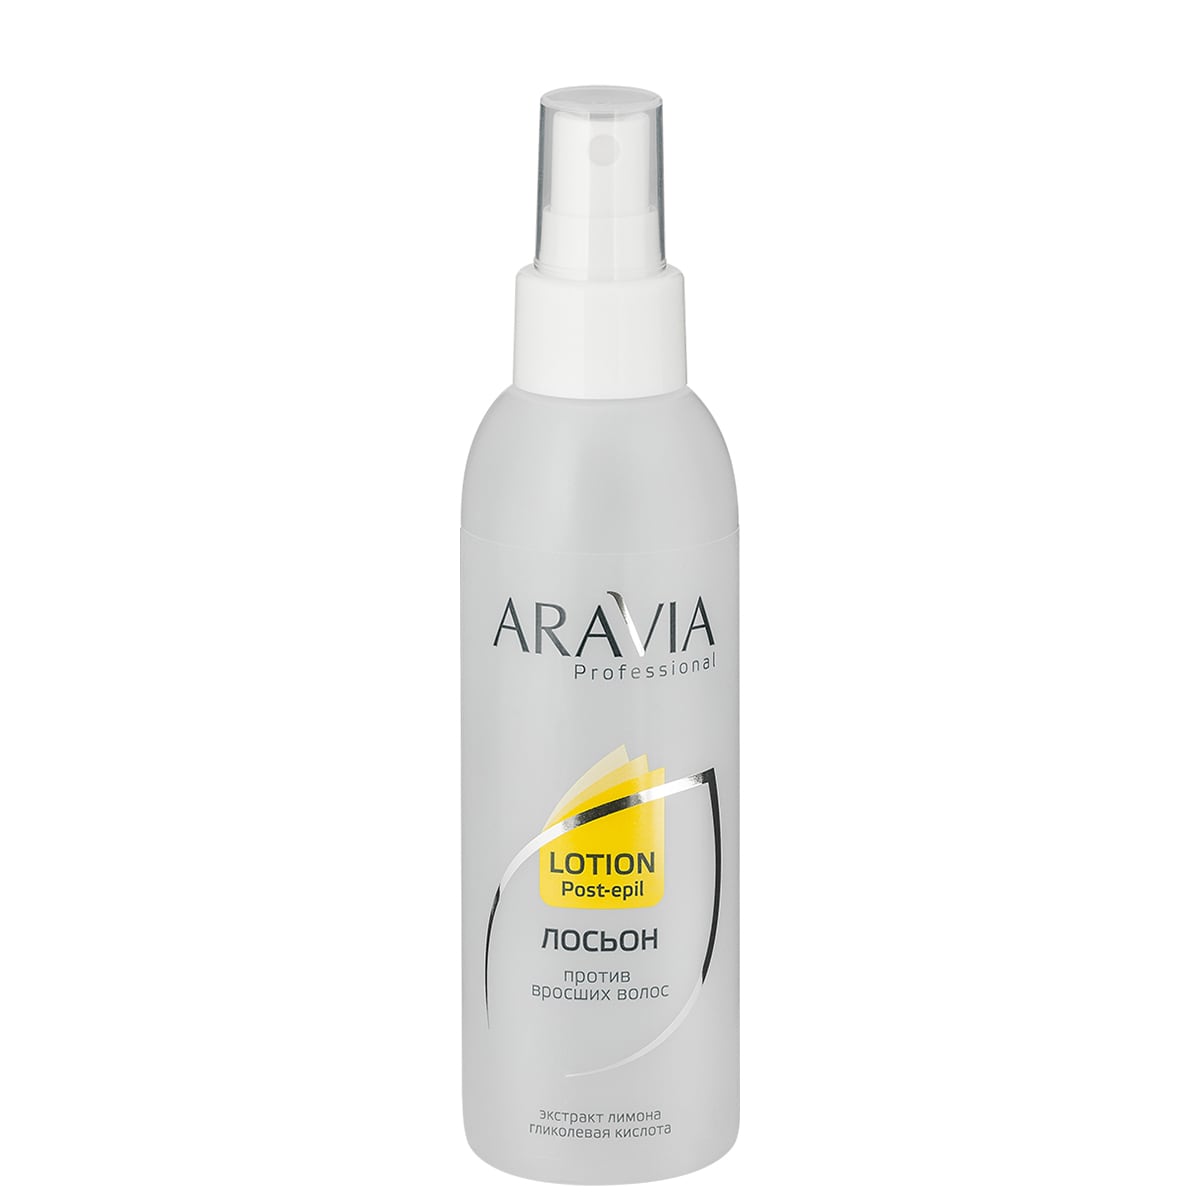 Лосьон против вросших волос с экстрактом лимона, 150 мл, ARAVIA Professional. 1043